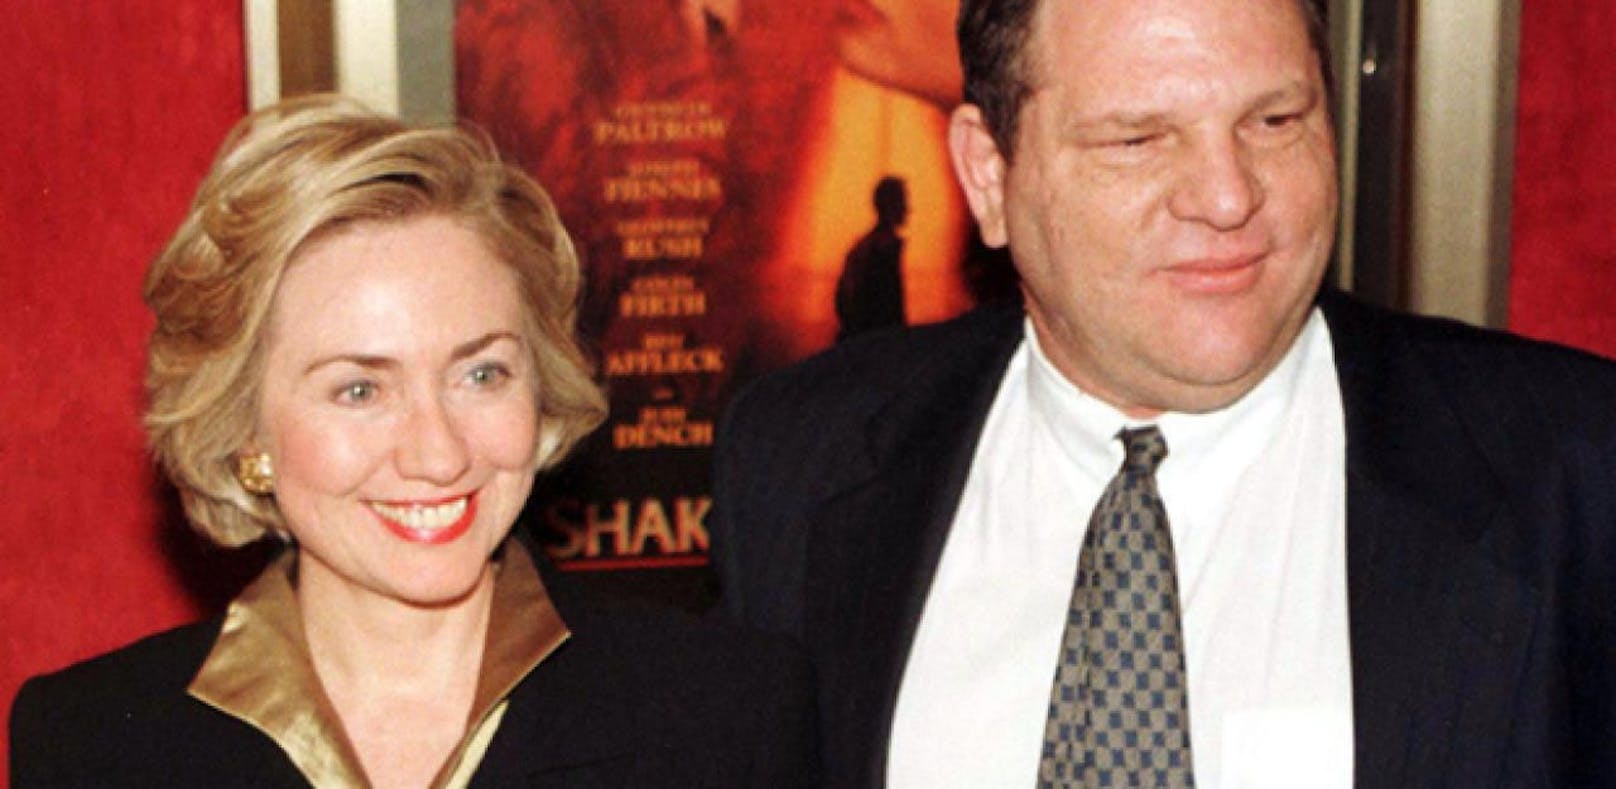 Hillary Clinton bedauert Freundschaft zu Weinstein